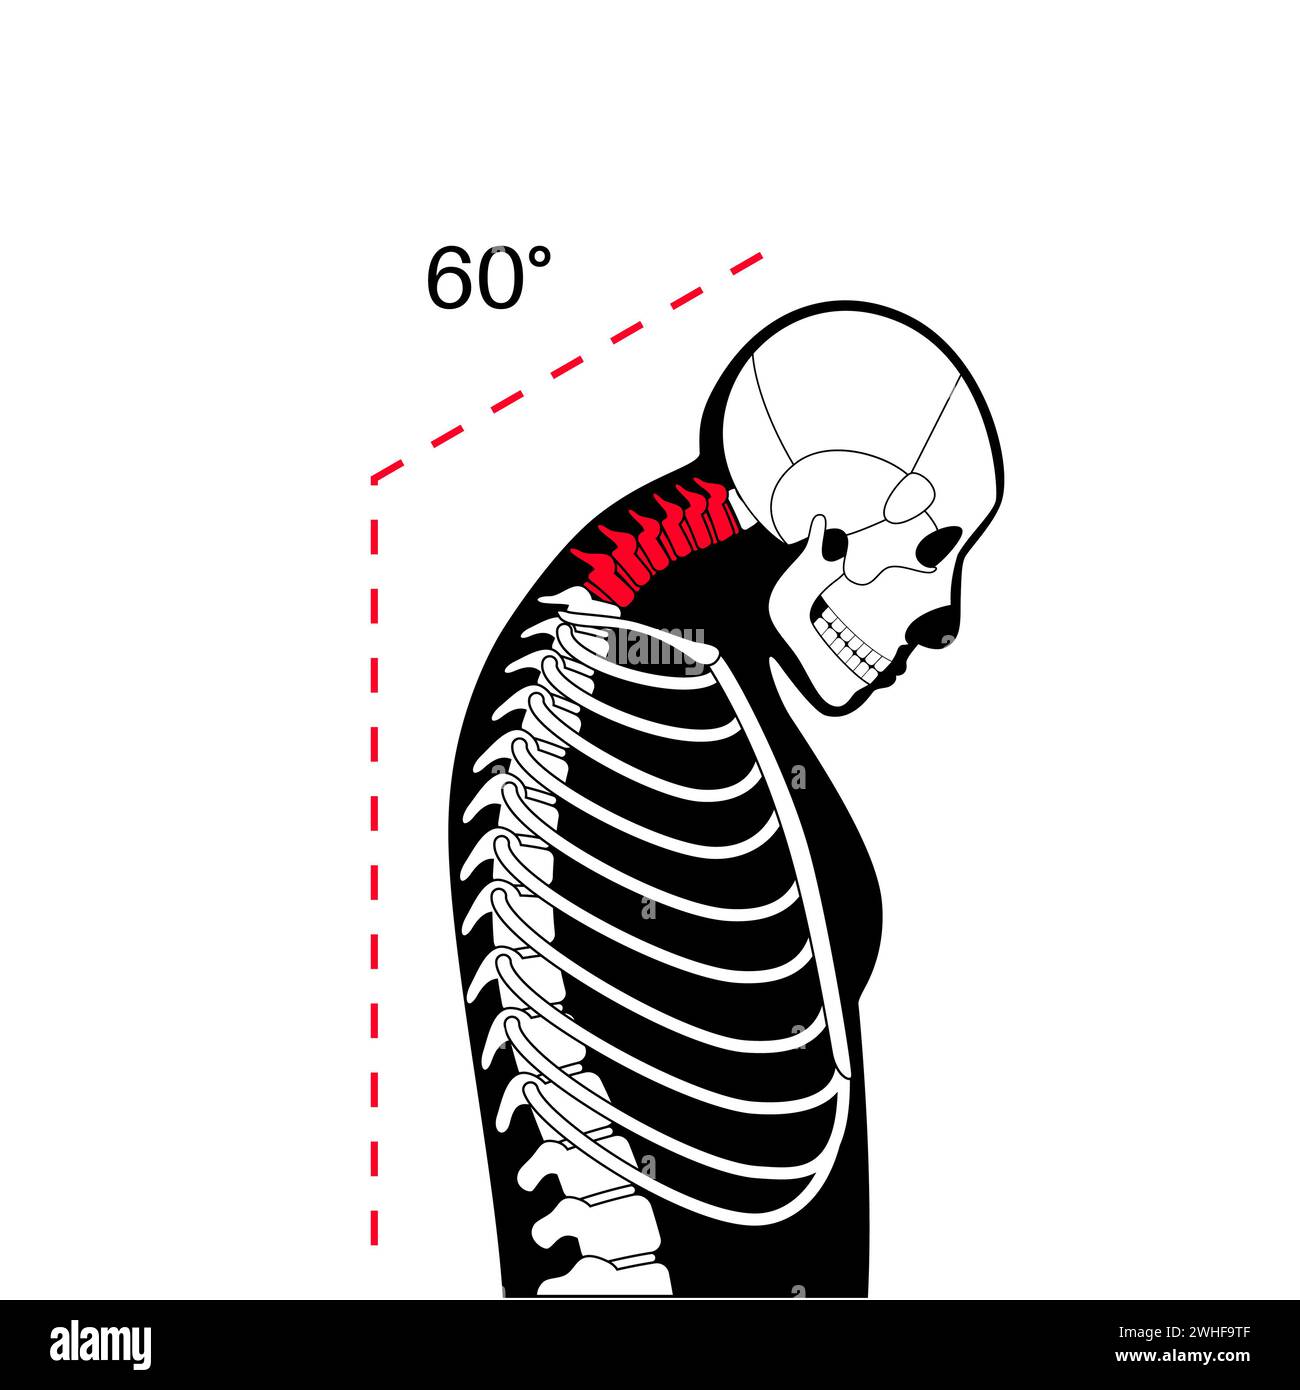 Neck vertebrae deformity, illustration Stock Photo